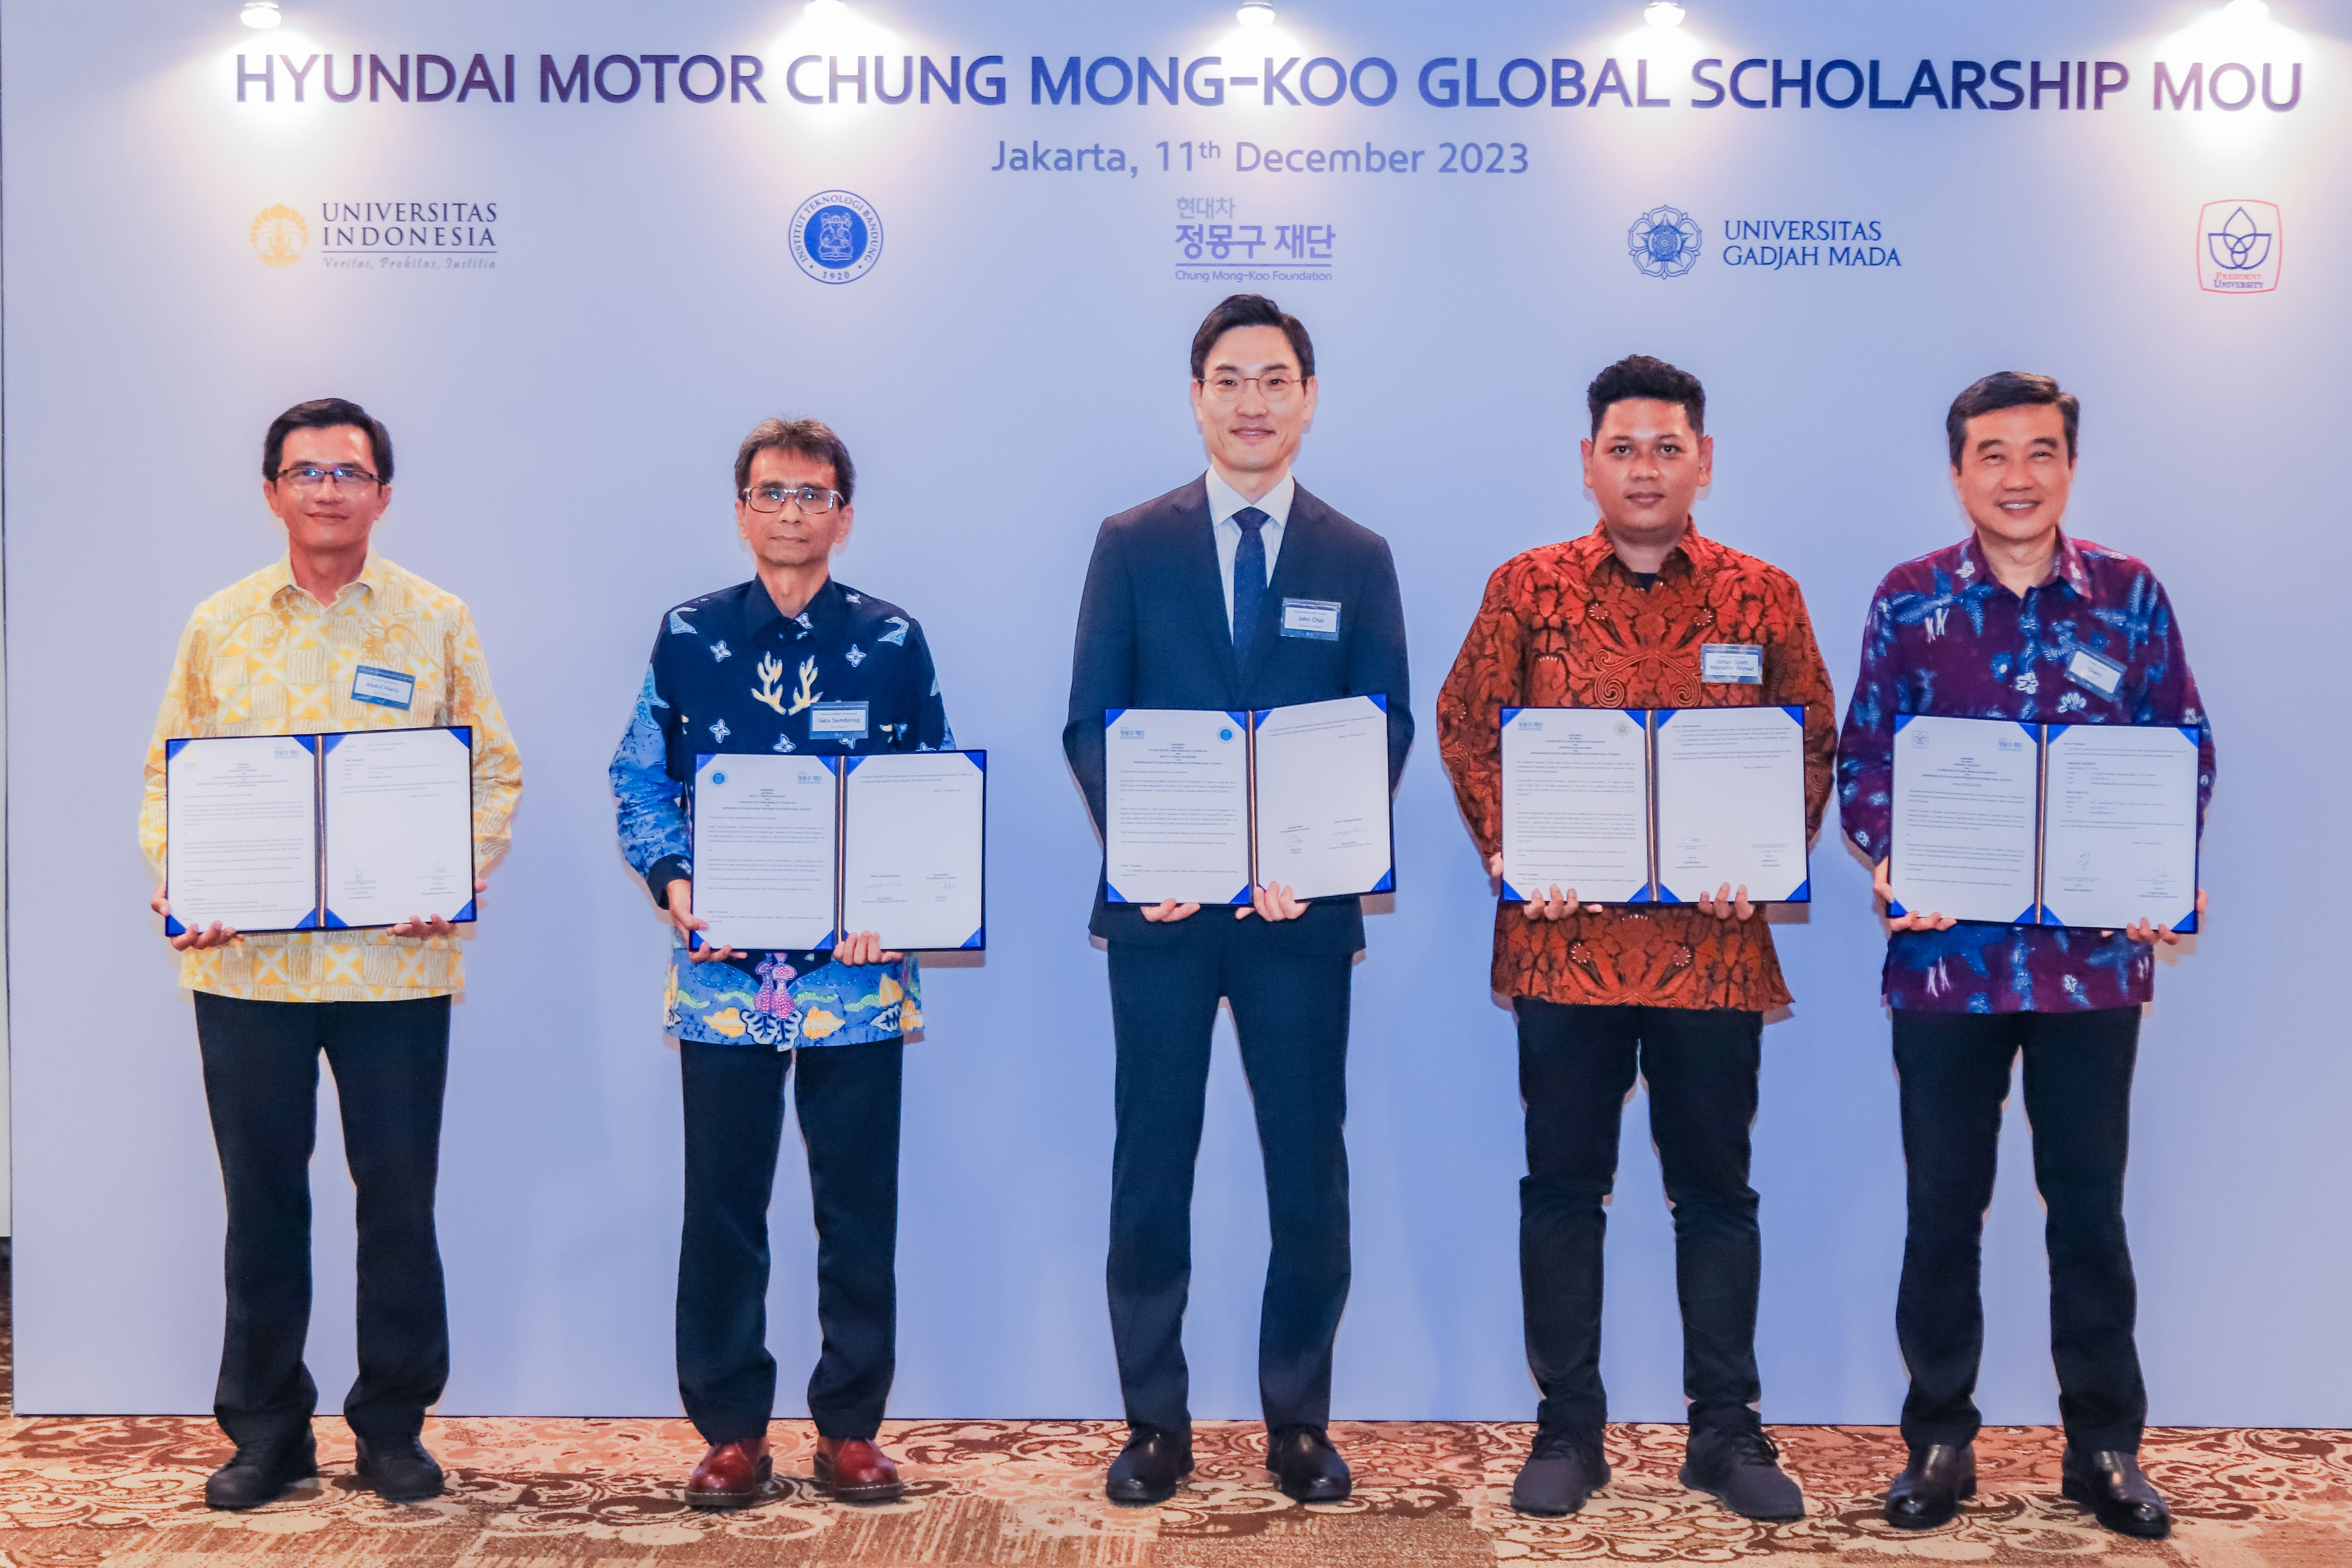 Hyundai Motor Chung Mong-Koo Berikan Program Beasiswa Untuk Generasi Muda Indonesia